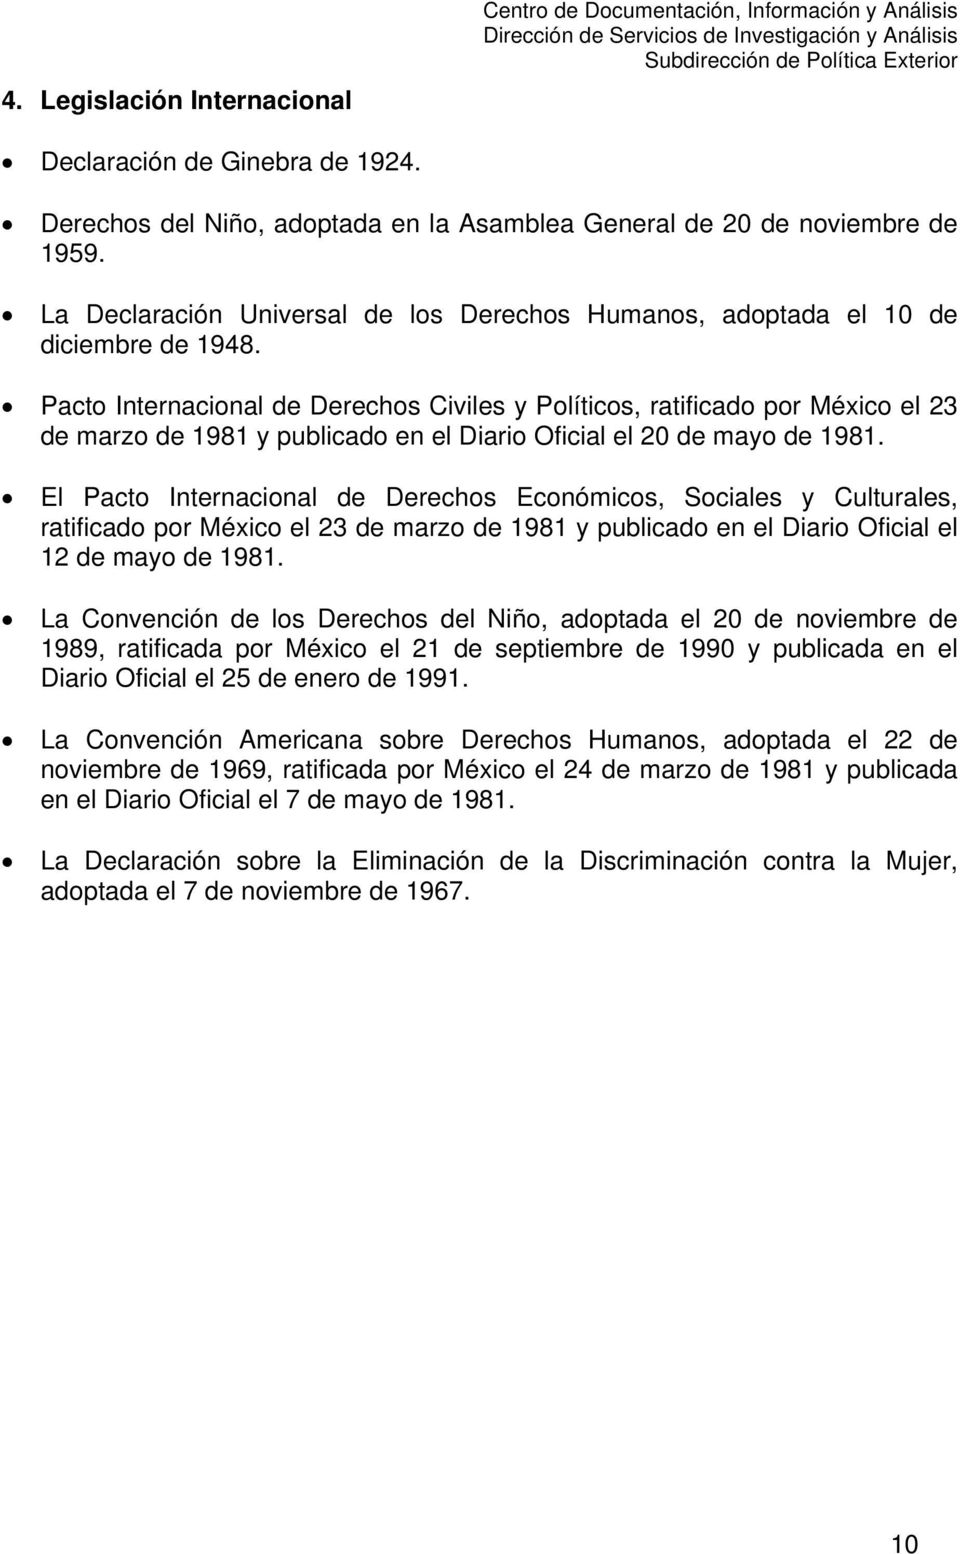 Pacto Internacional de Derechos Civiles y Políticos, ratificado por México el 23 de marzo de 1981 y publicado en el Diario Oficial el 20 de mayo de 1981.